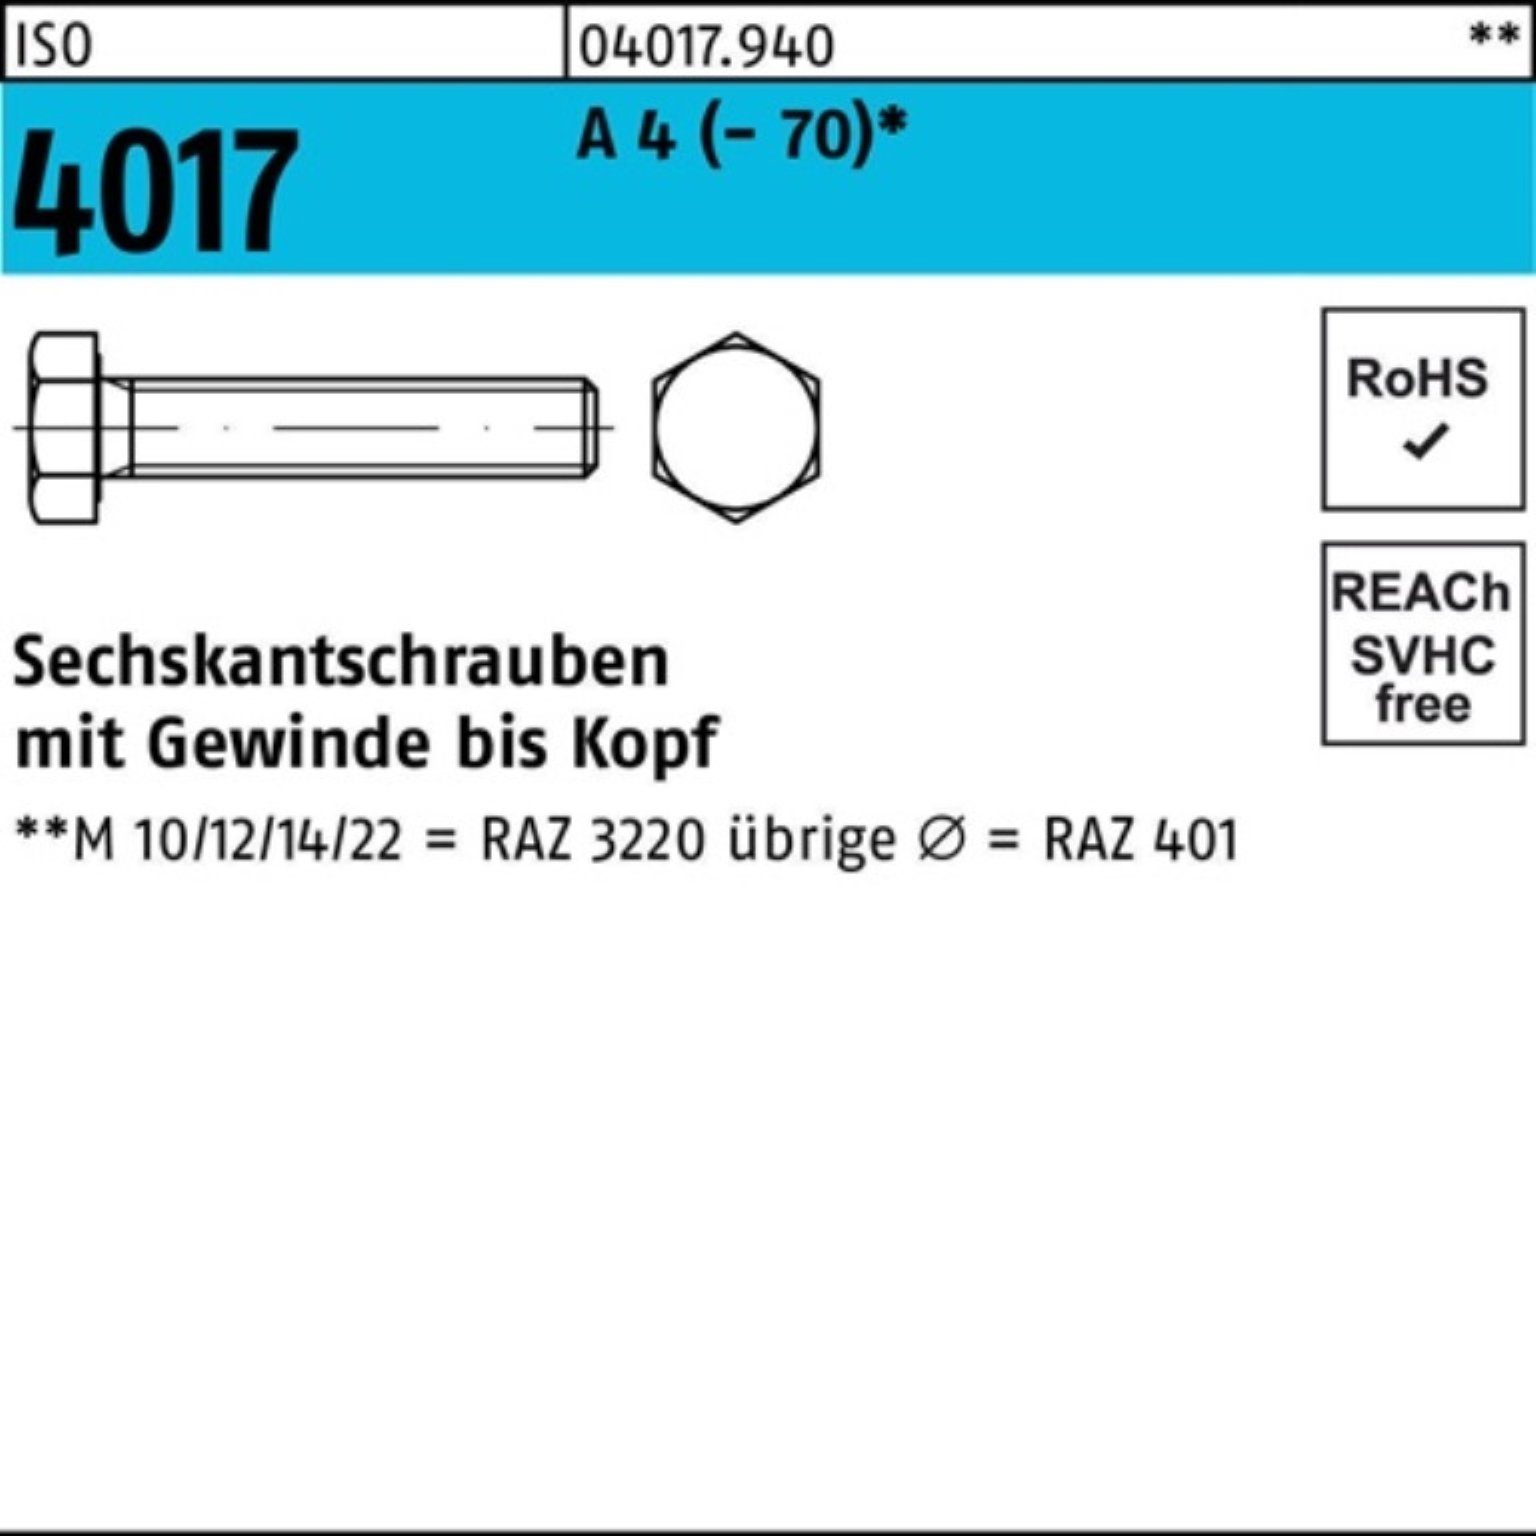 Bufab Sechskantschraube 100er Pack Sechskantschraube ISO 4017 VG M27x 140 A 4 (70) 1 Stück